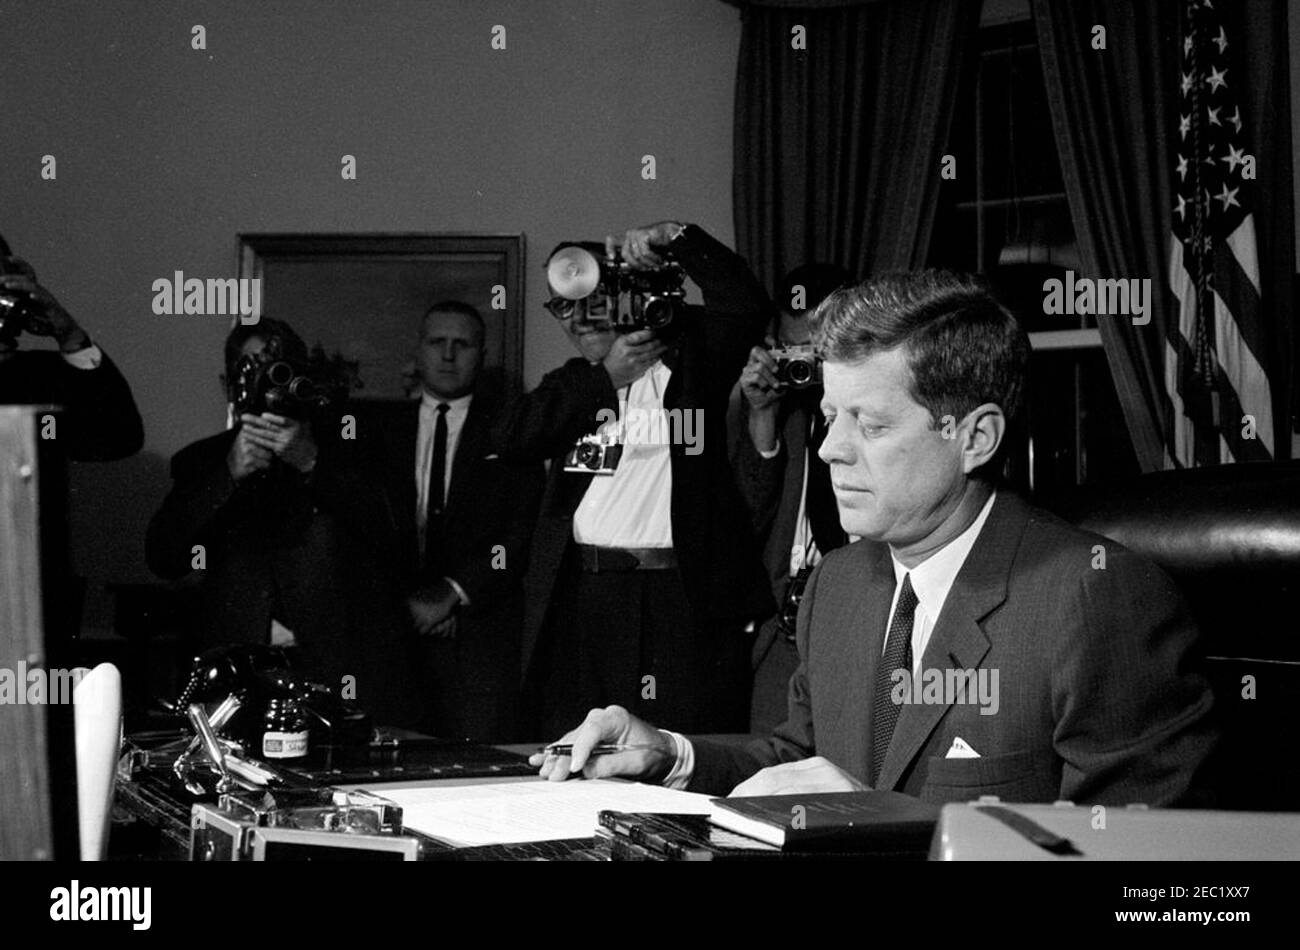 Signature de la proclamation, interdiction de la livraison d'armes offensives à Cuba, 7:05. Le Président John F. Kennedy signe l'interdiction de la livraison d'armes offensives à Cuba. Frank Yeager, agent du service secret de la Maison Blanche, se tient contre le mur à gauche ; les photographes ne sont pas identifiés. Oval Office, Maison Blanche, Washington, D.C. Banque D'Images